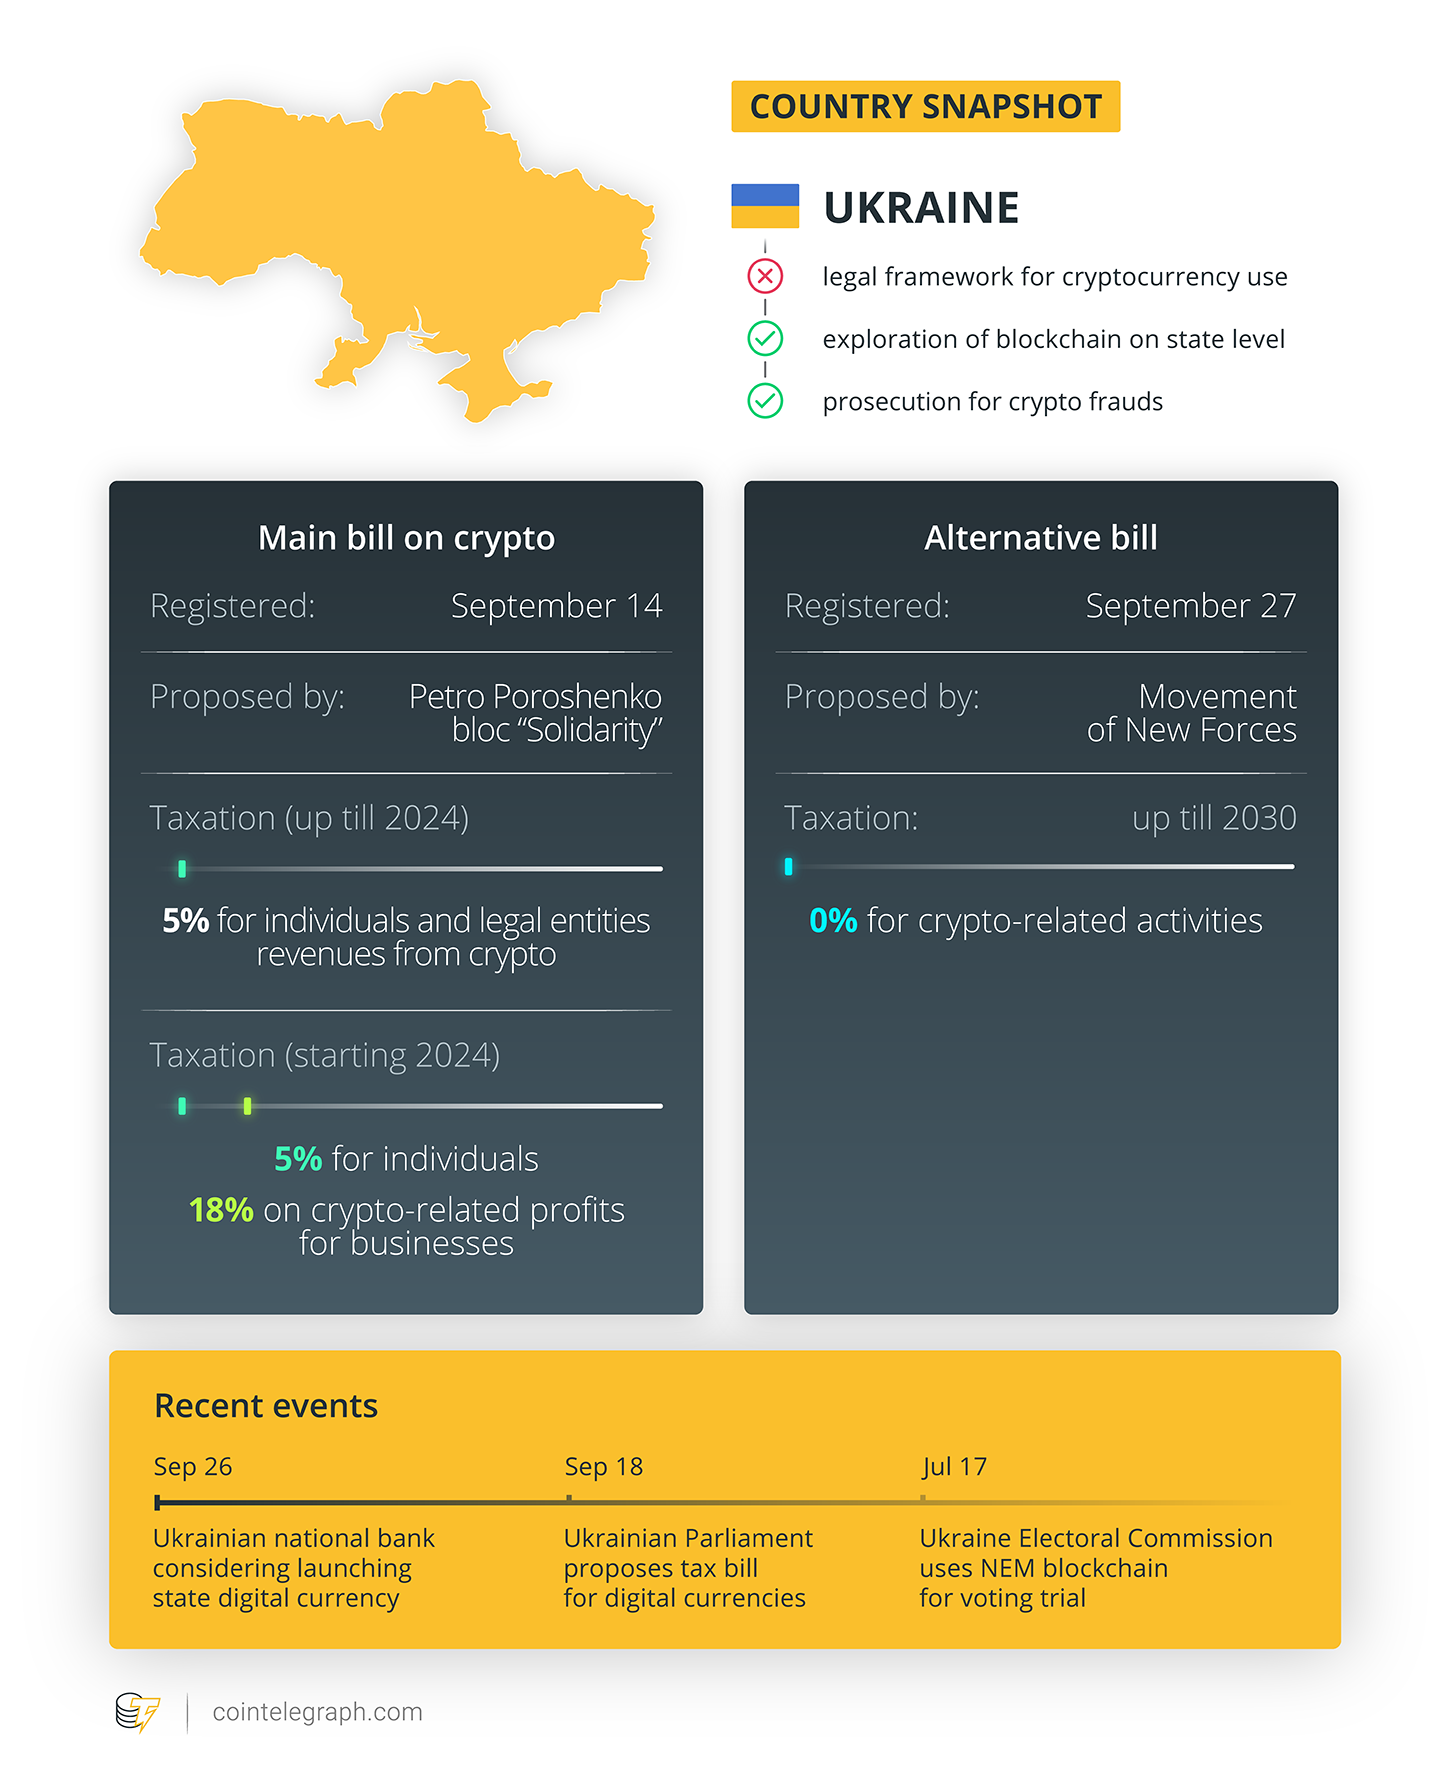 乌克兰财政部建立工作组以制定加密税法